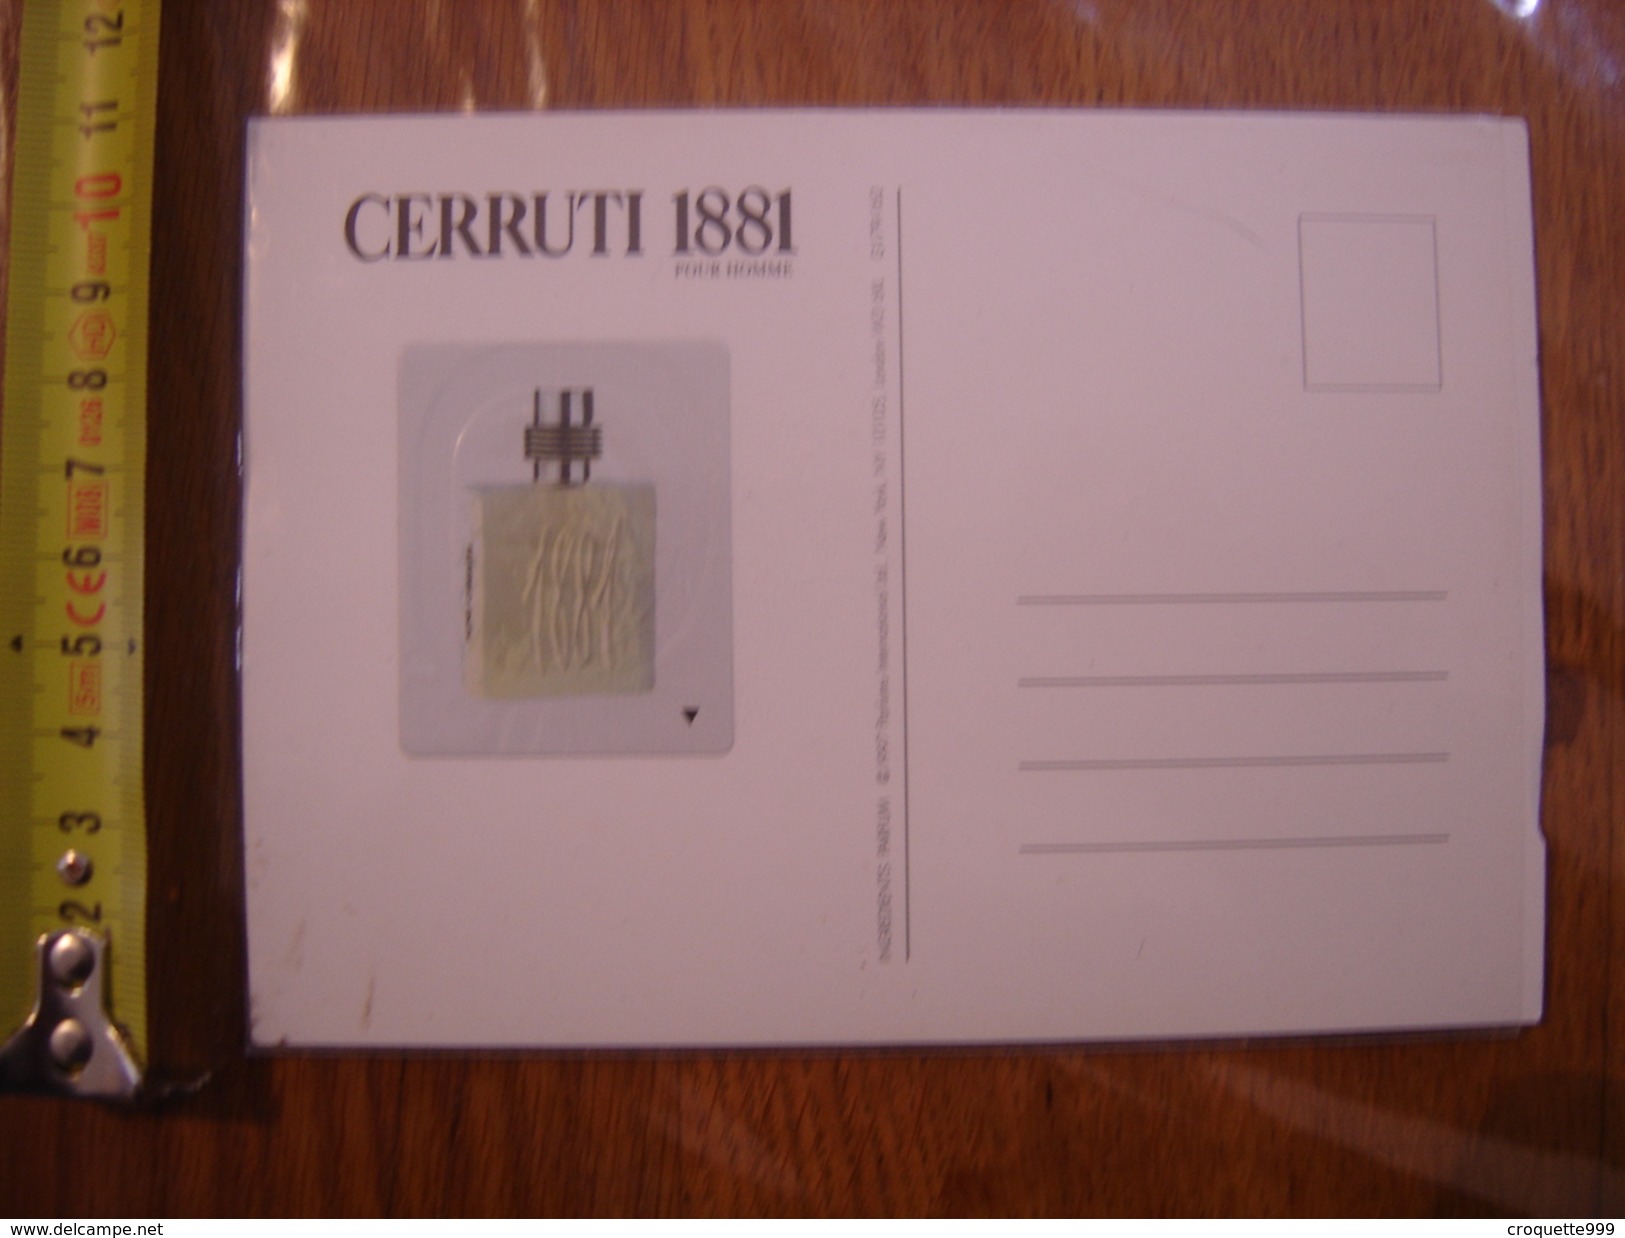 Carte Publicite Parfum 1881 CERRUTI - Non Classificati